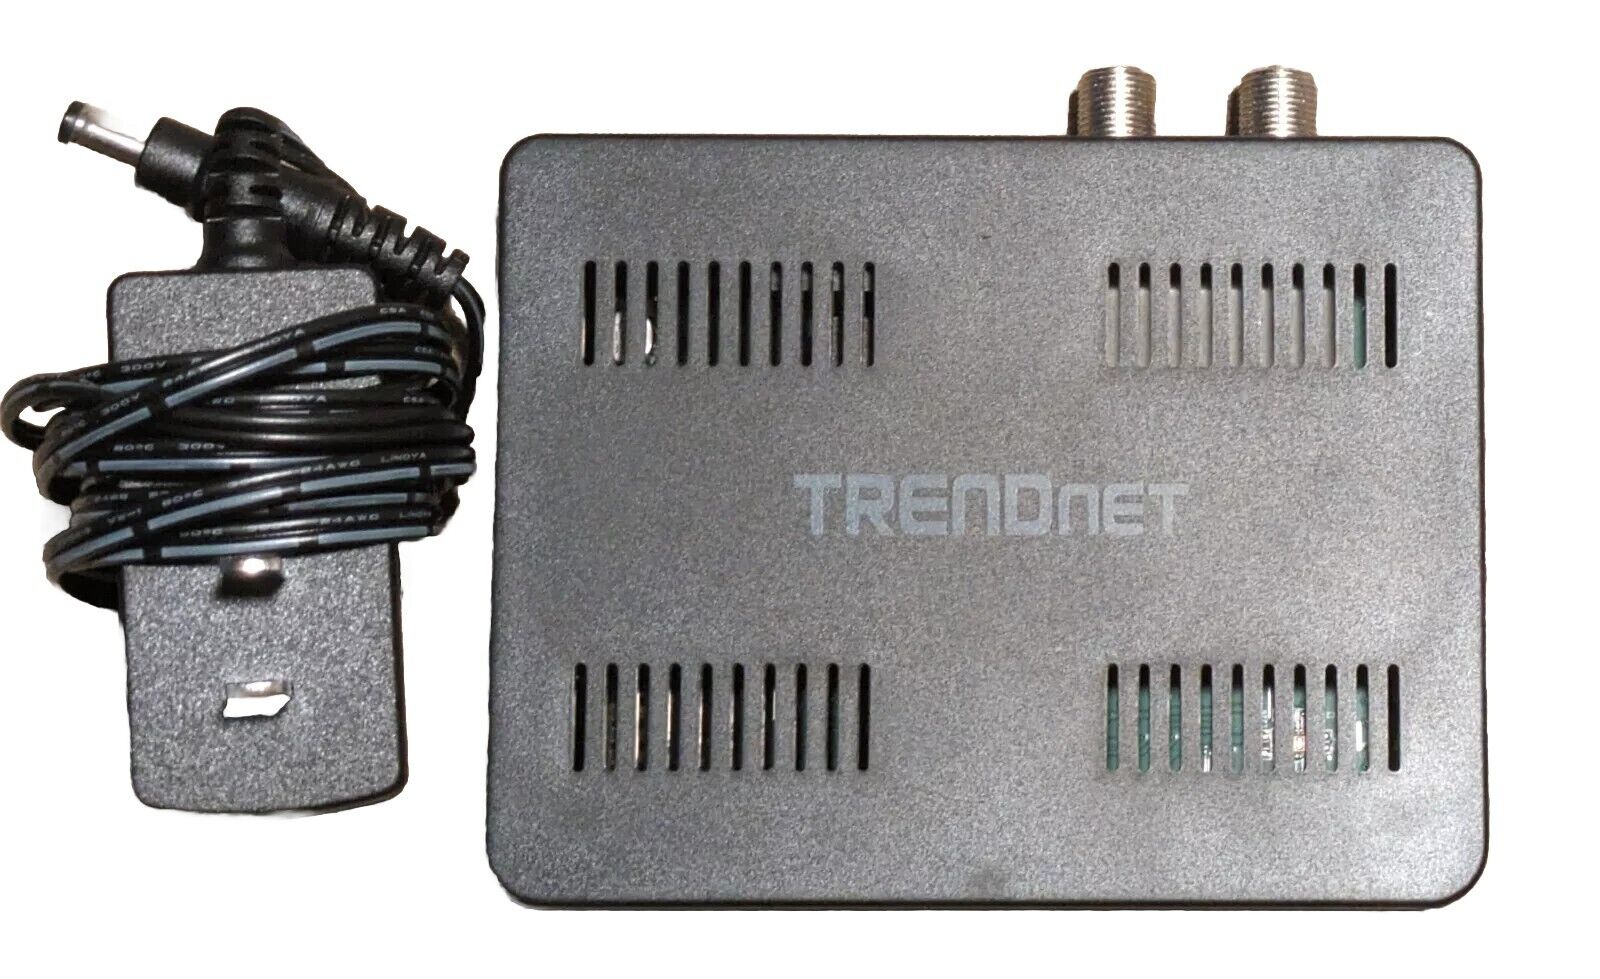 TRENDNET (TMO-311C) Ethernet over Coax Adapter